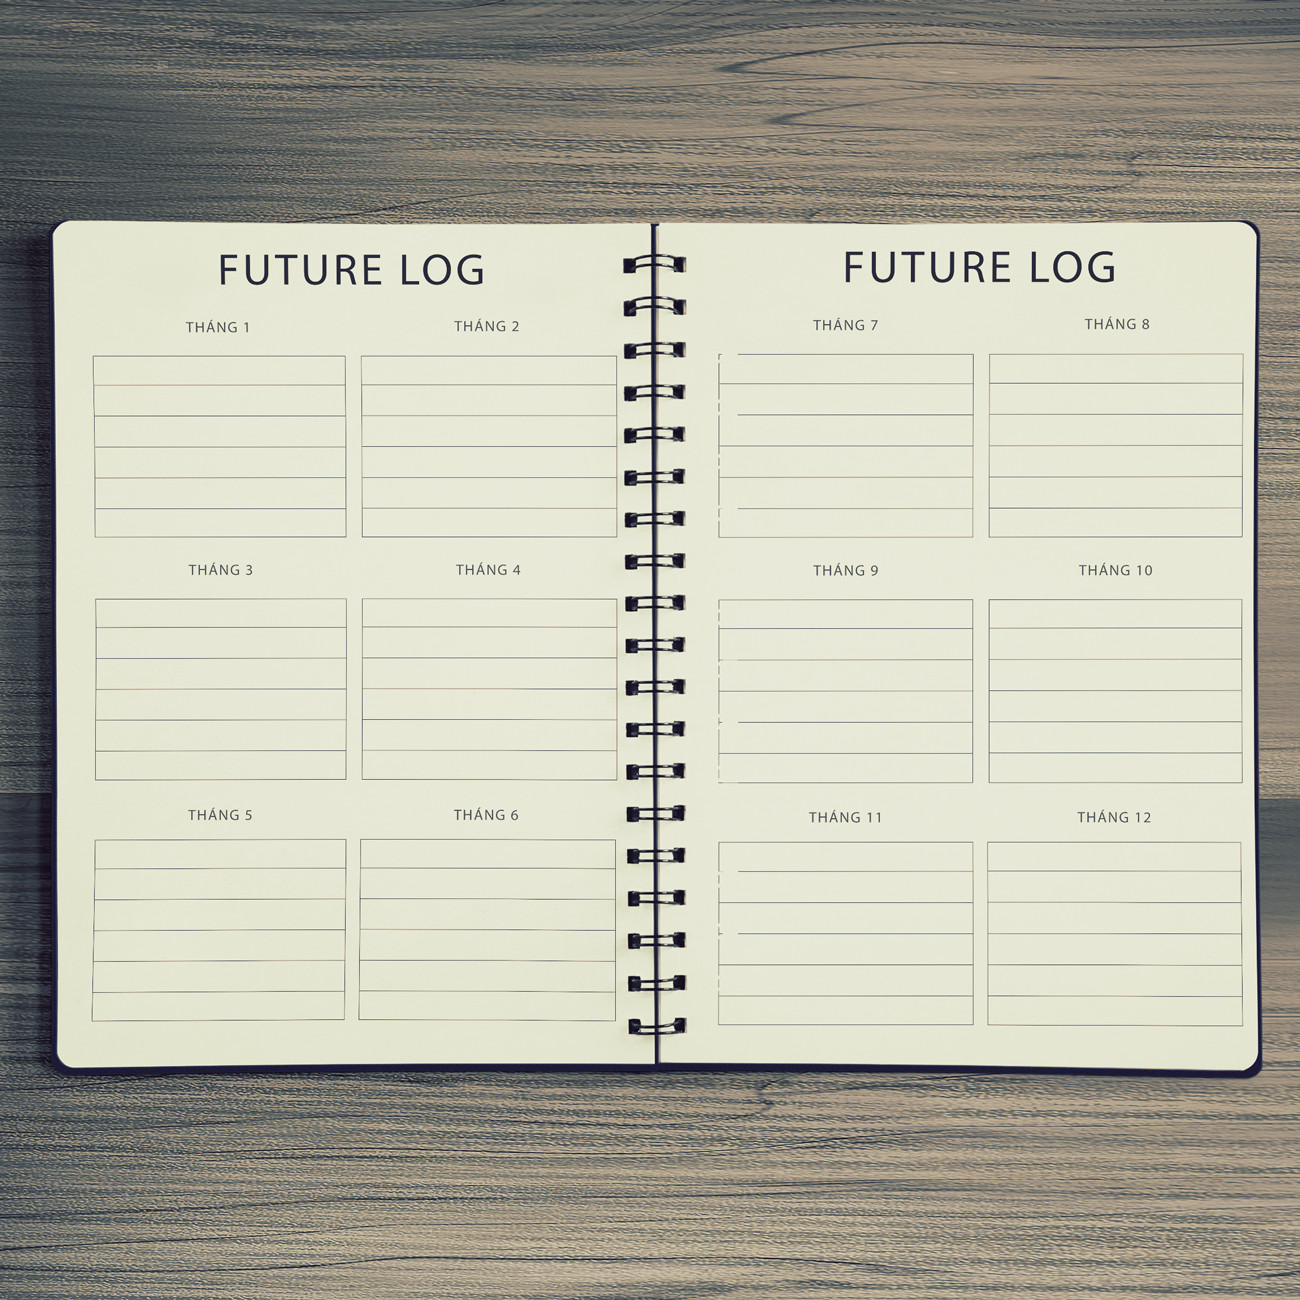 Sổ tay bullet journal cho người bắt đầu, kẻ sẵn future log, monthly log, weekly log, habit tracker